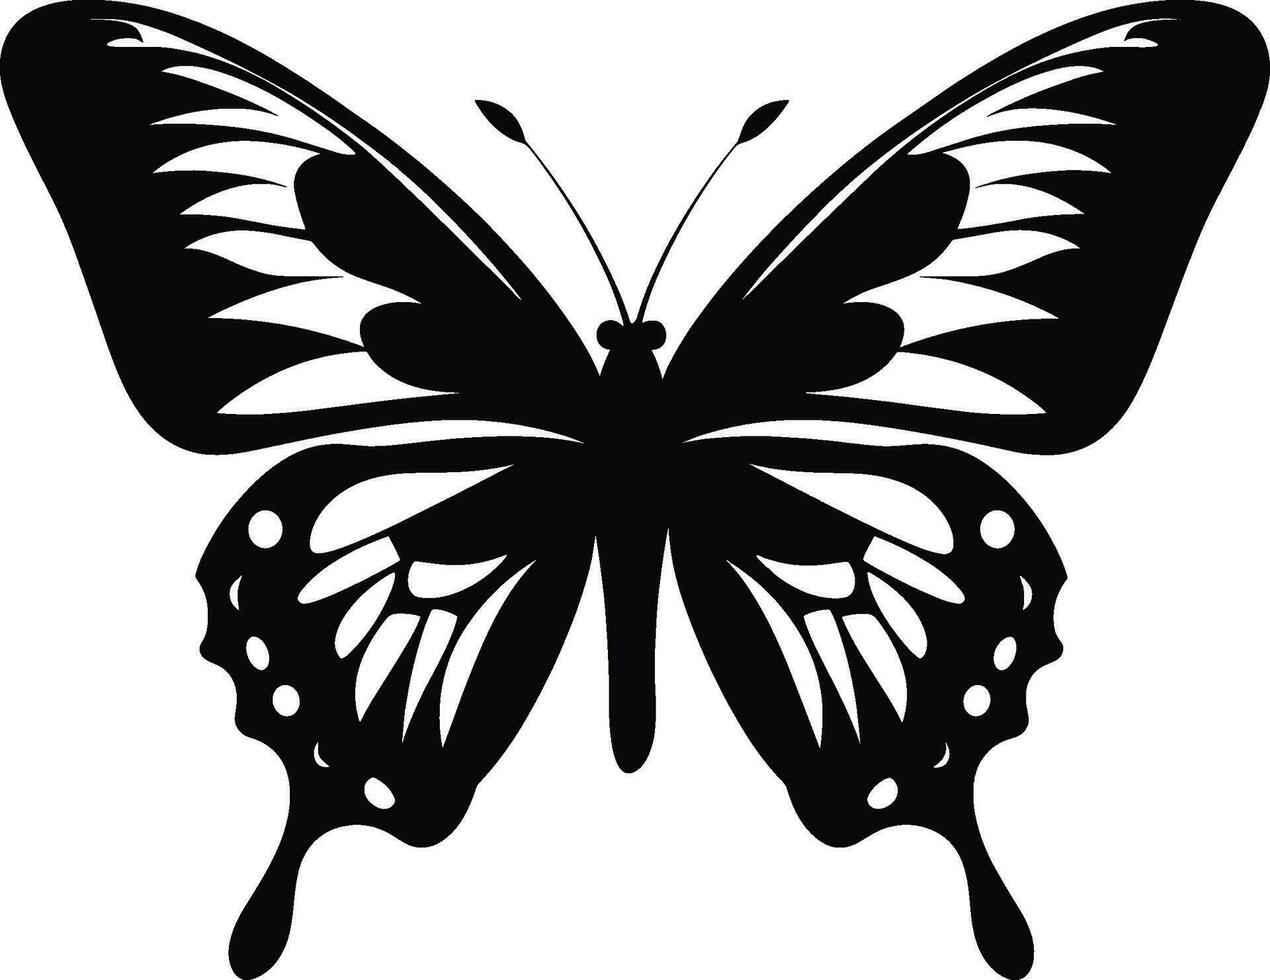 ai generiert Monarch Schmetterling Silhouette, Seite Sicht. Vektor Illustration isoliert auf Weiß Hintergrund. ai generiert Illustration.